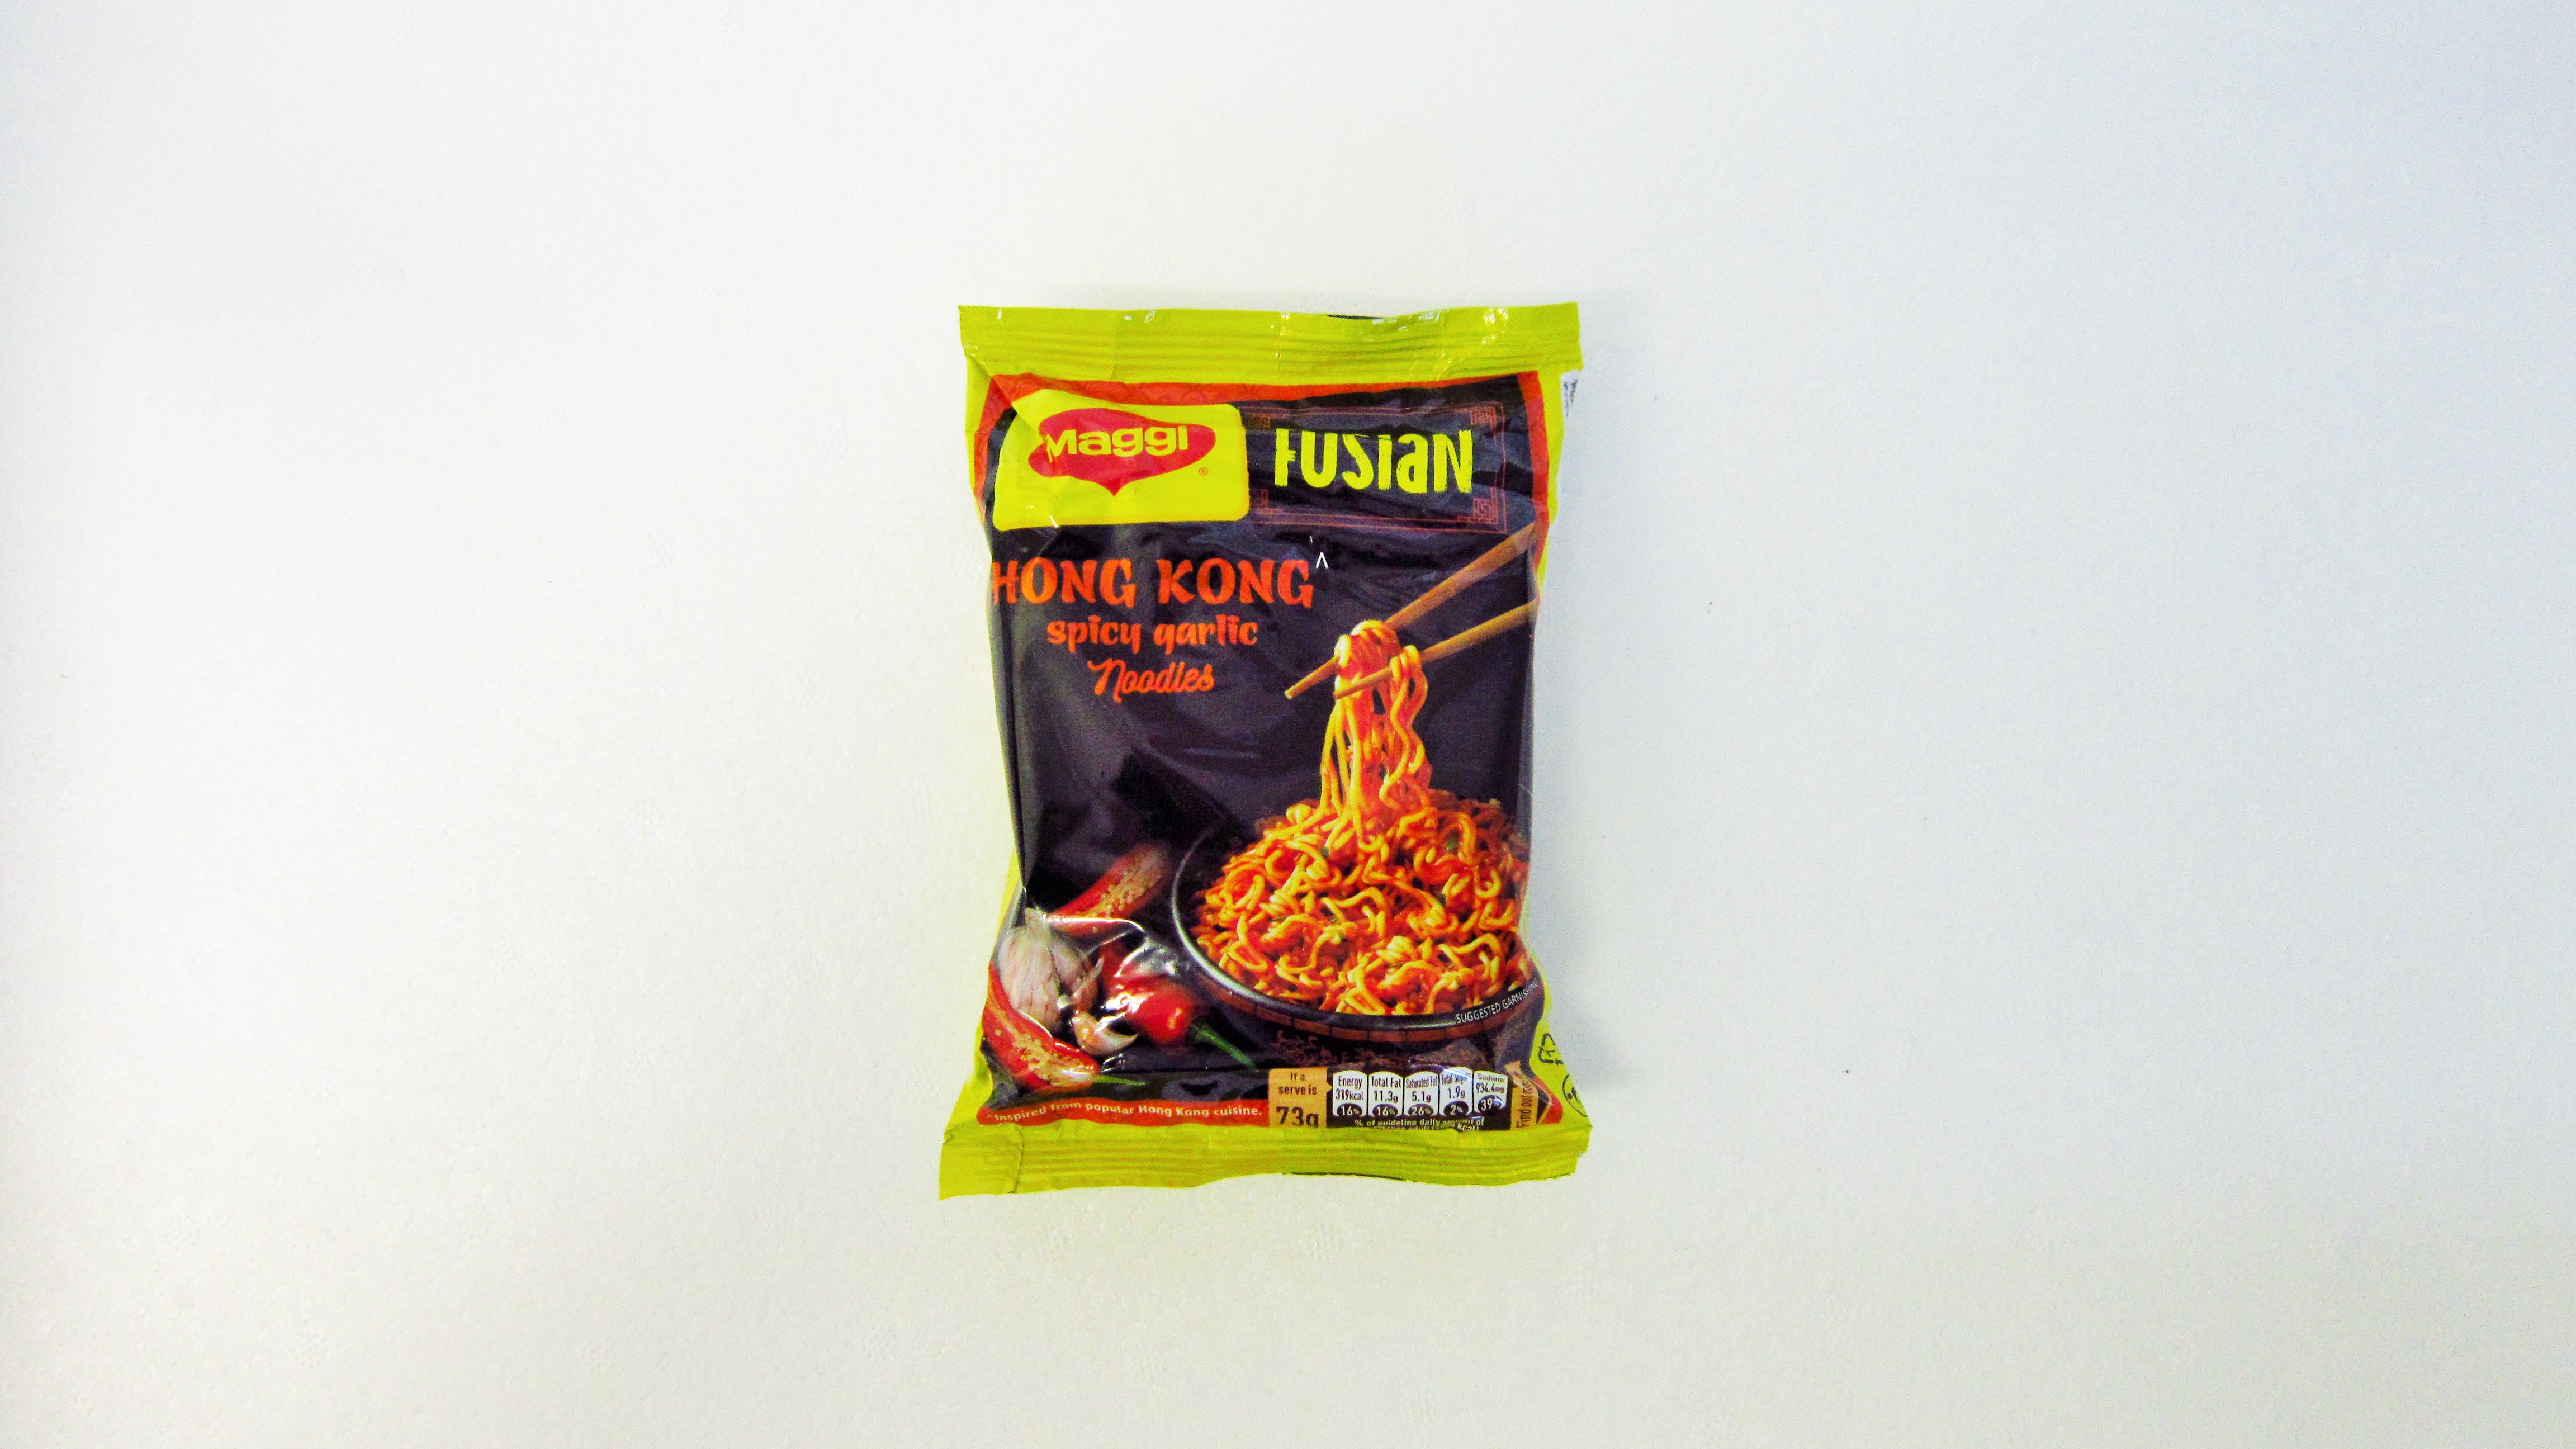 Maggi Fusion Hong Kong Spicy Garlic Noodles Image